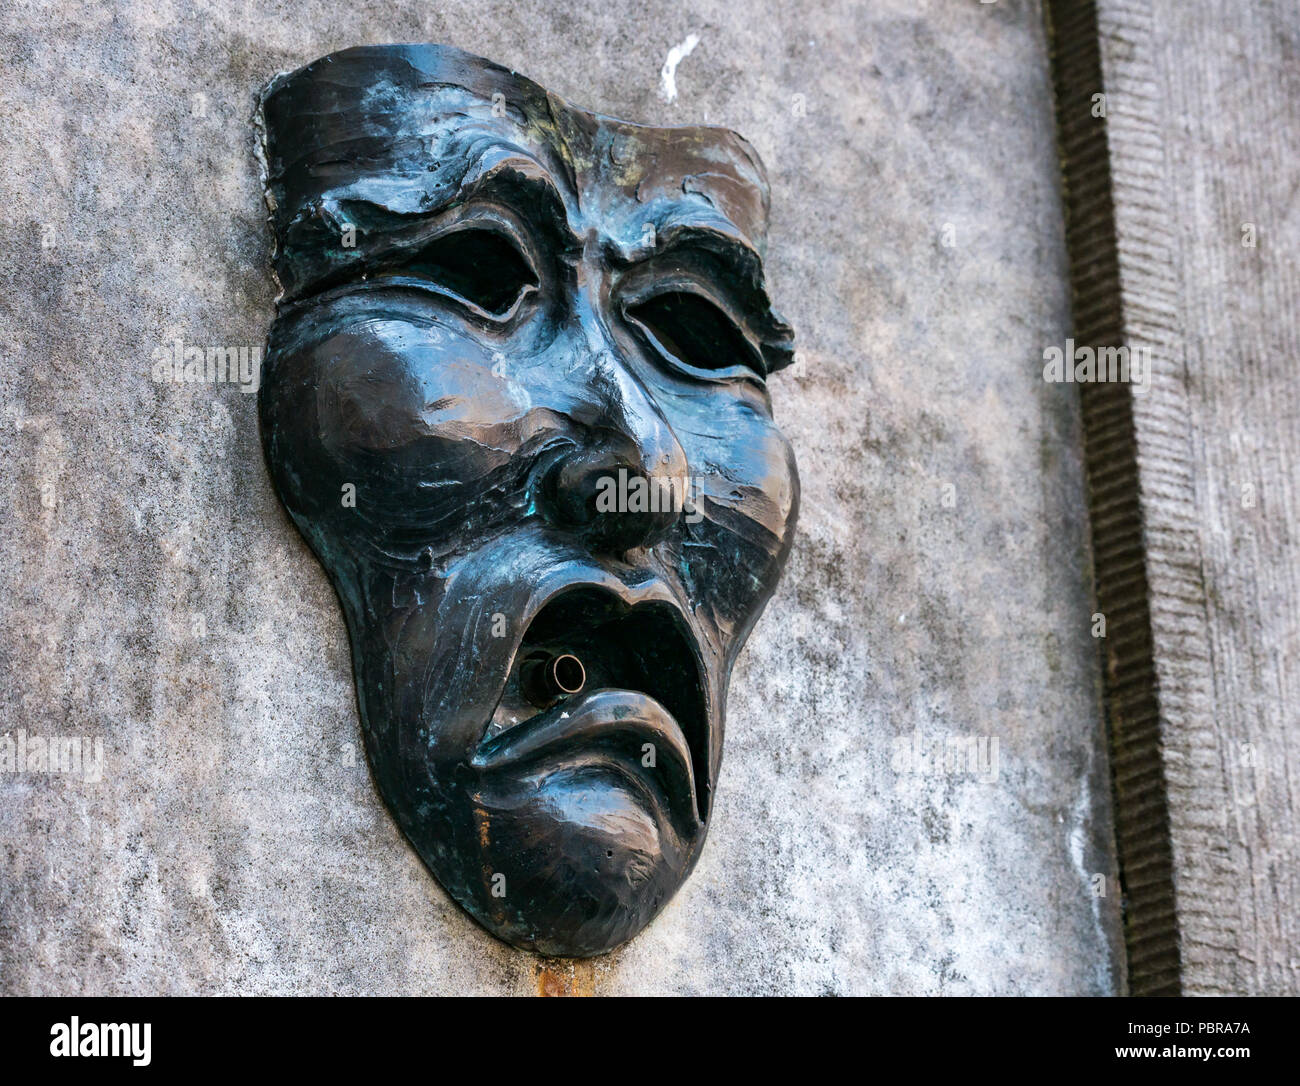 Chiusura del simbolo della frangia maschera di commedia della faccina triste sulla testa pozzo street fountain fuori Fringe box office, Royal Mile di Edimburgo, Scozia, Regno Unito Foto Stock